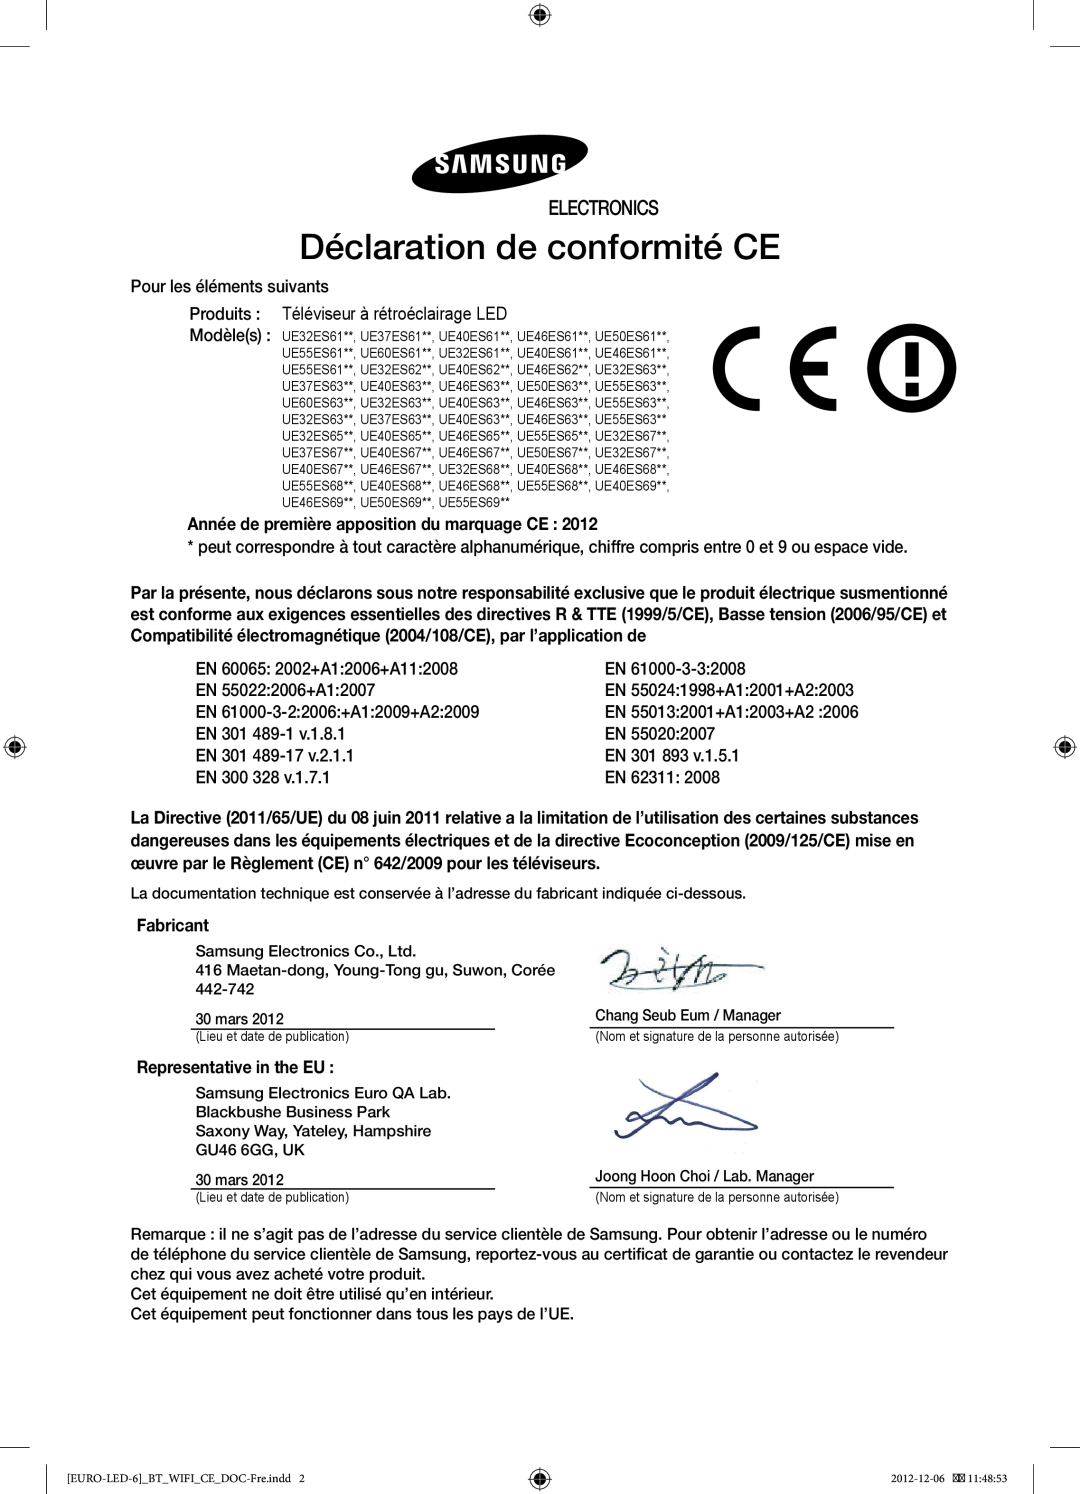 Samsung UE40ES6710SXZF manual Déclaration de conformité CE, Electronics, Année de première apposition du marquage CE 